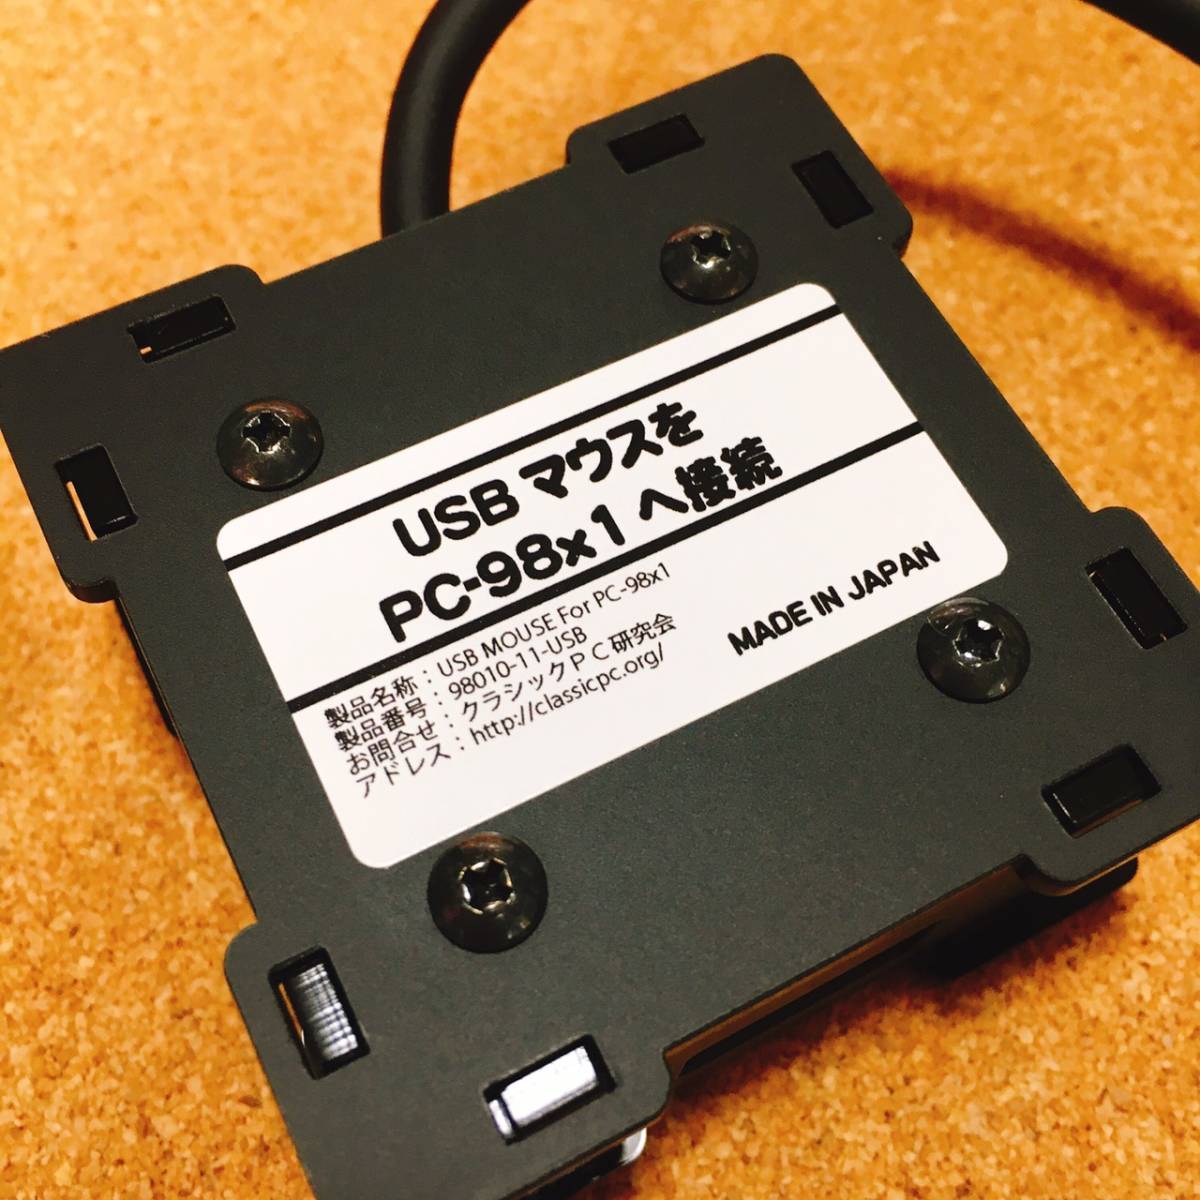 新品未使用◆NEC PC-9801 PC-9821シリーズへUSBマウスを接続するための変換機◆_本体